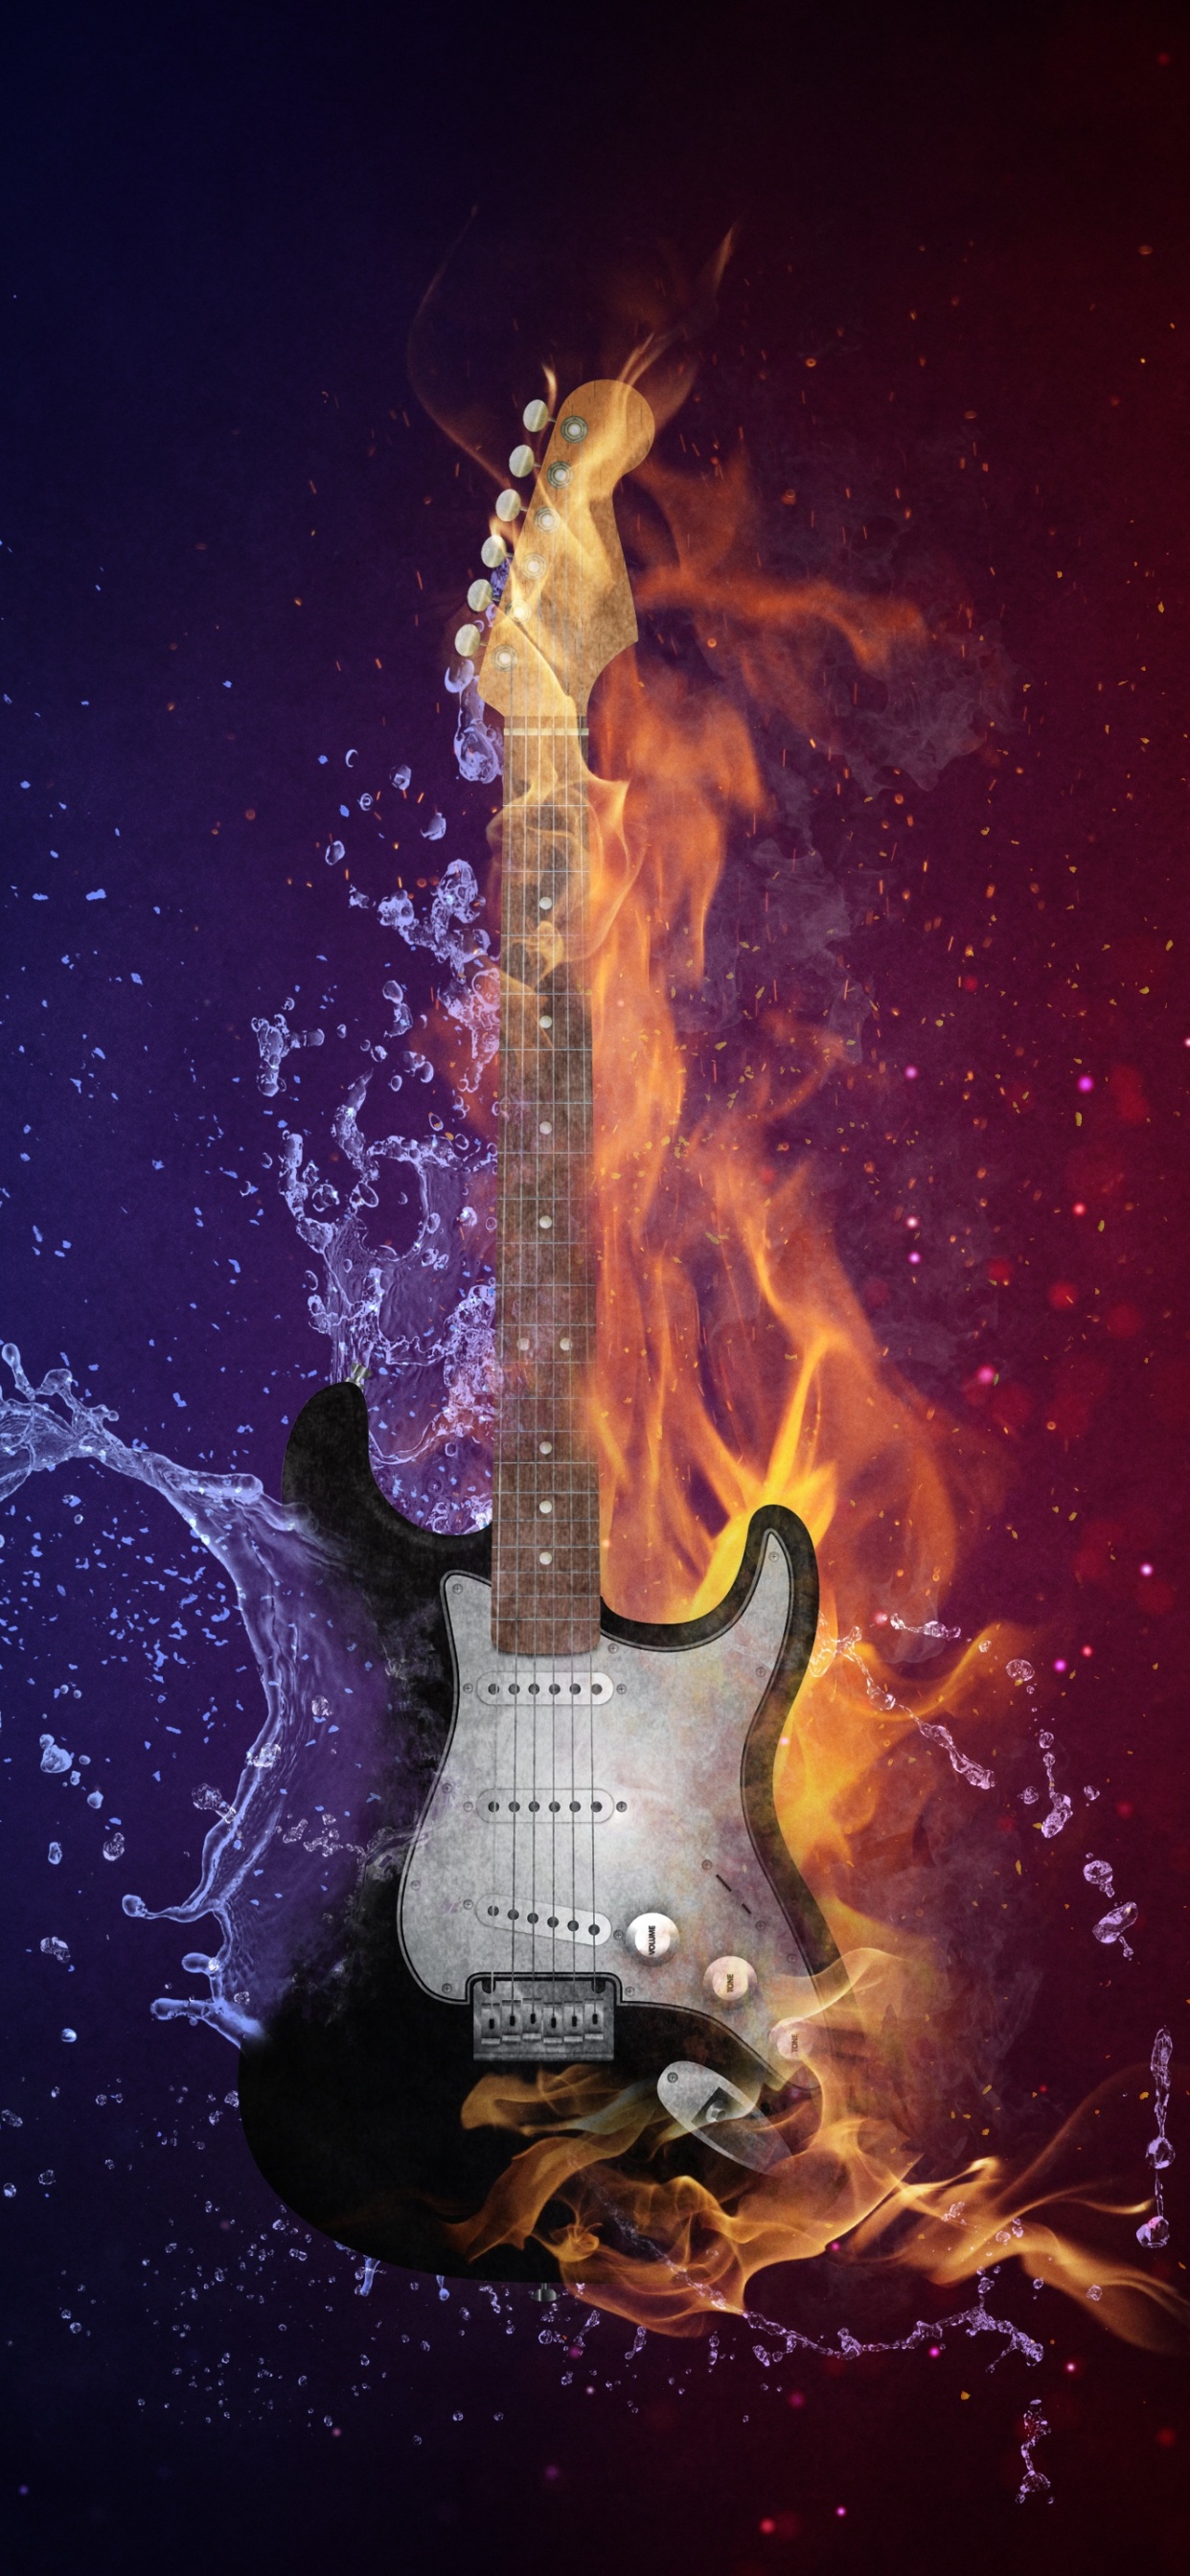 Guitarra, Calor, Llama, Fuego, Ambiente. Wallpaper in 1242x2688 Resolution